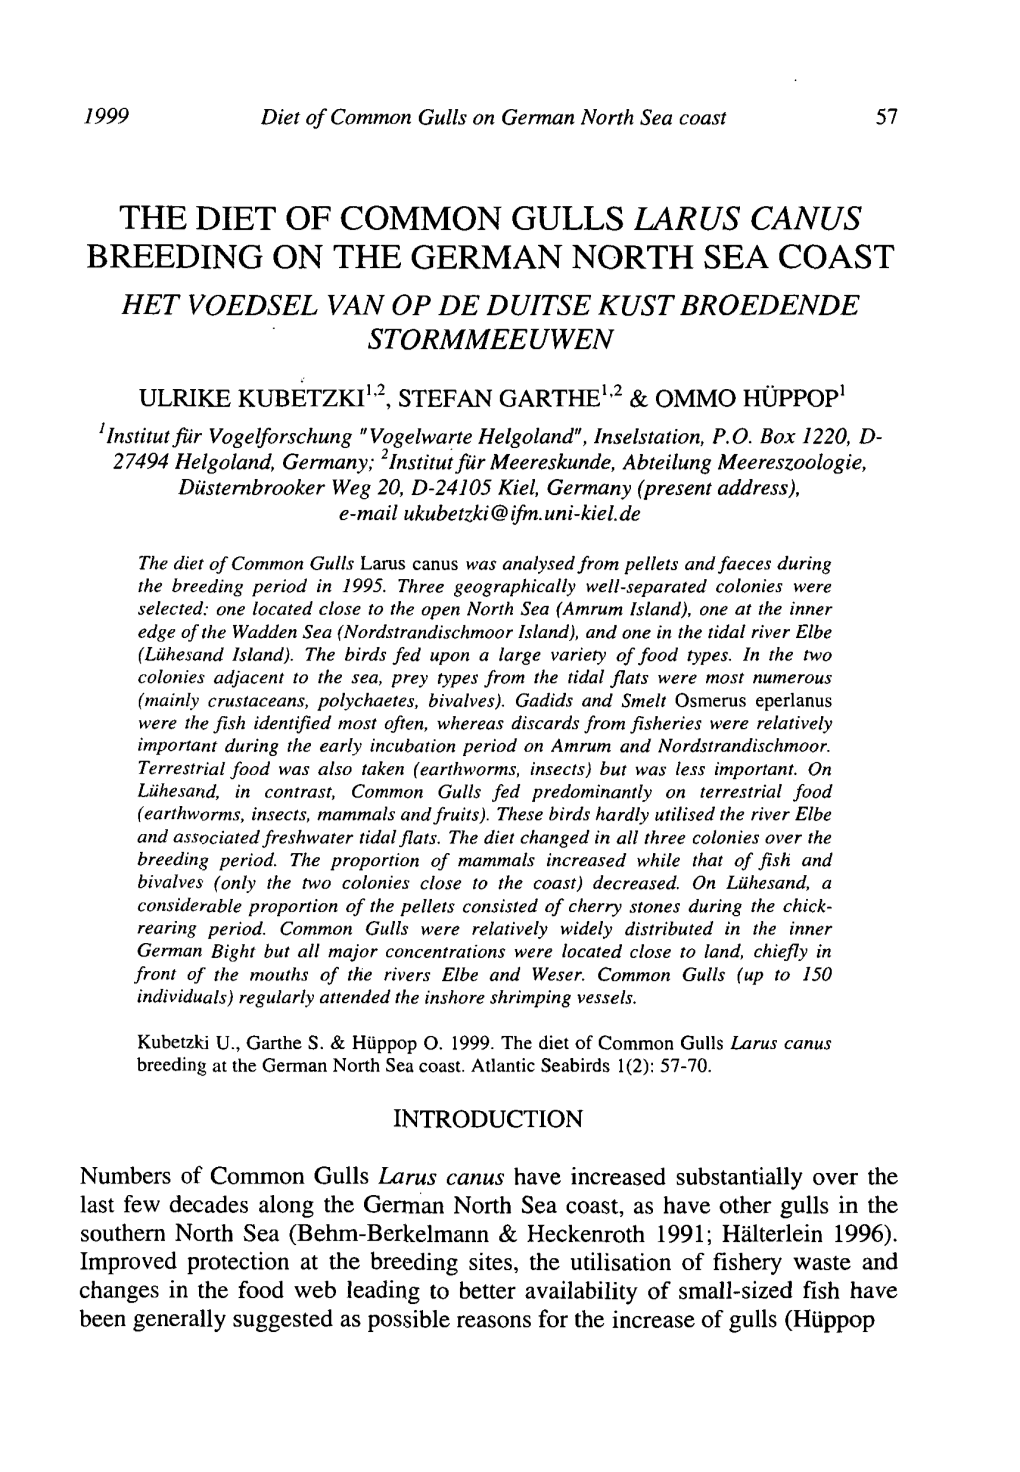 The Diet of Common Gulls Larus Canus Breeding on the German North Sea Coast Het Voedsel Van Op De Duitse Kust Broedende Stormmeeuwen